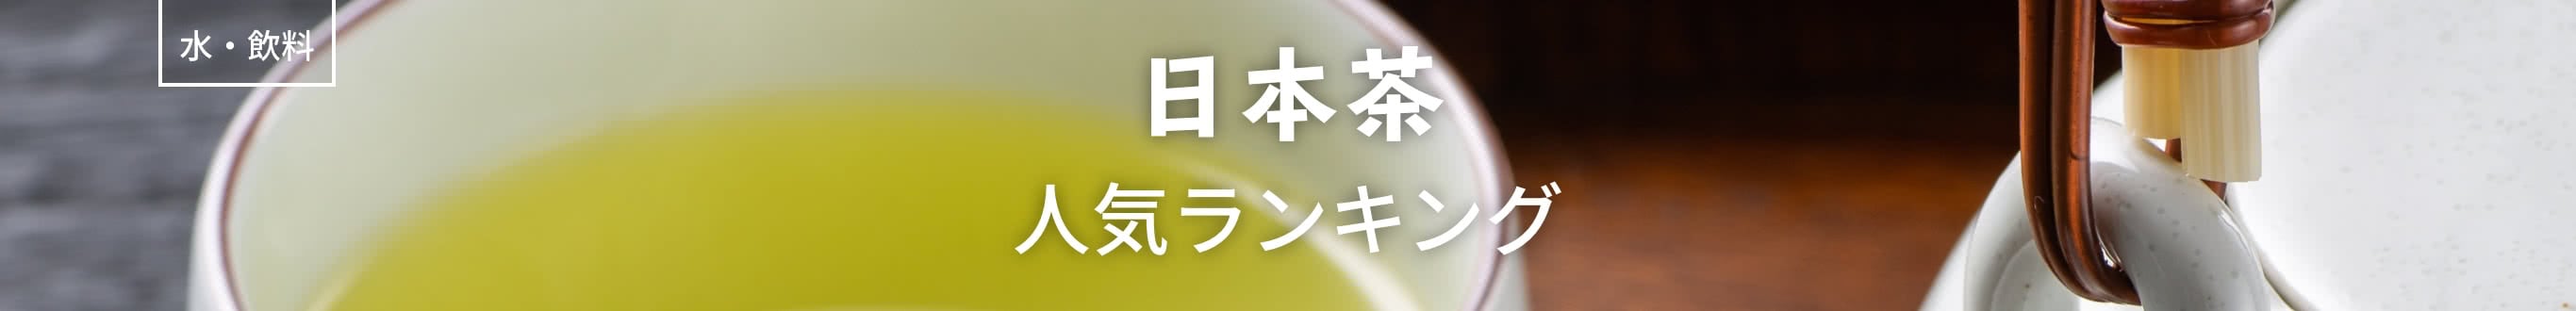 日本茶人気ランキング